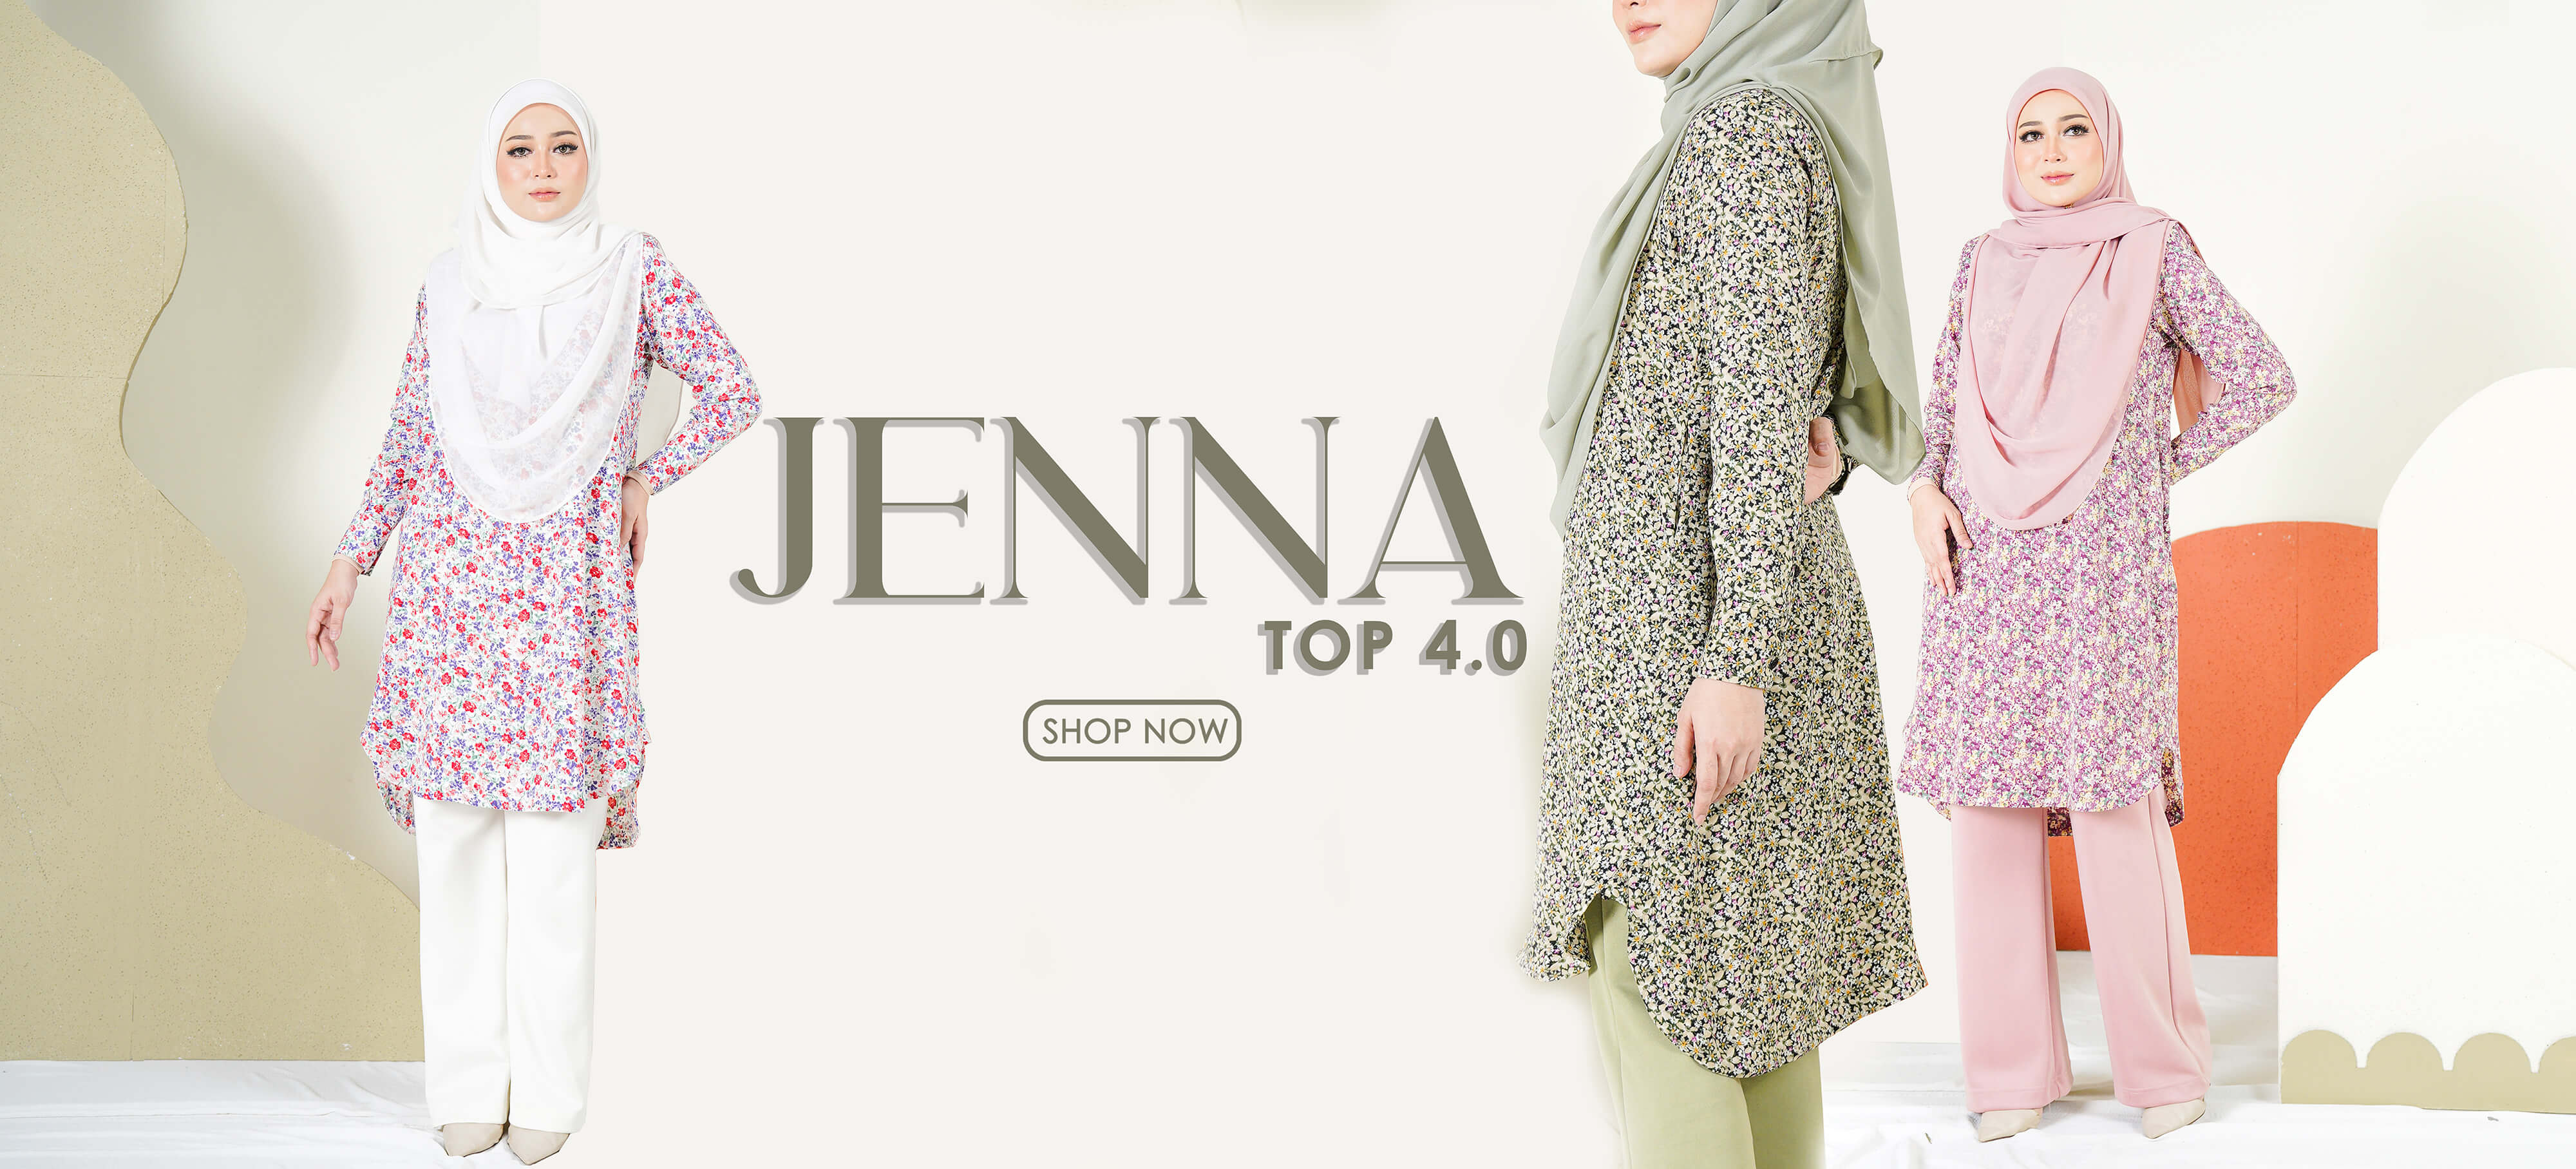 Jenna Top 4.0